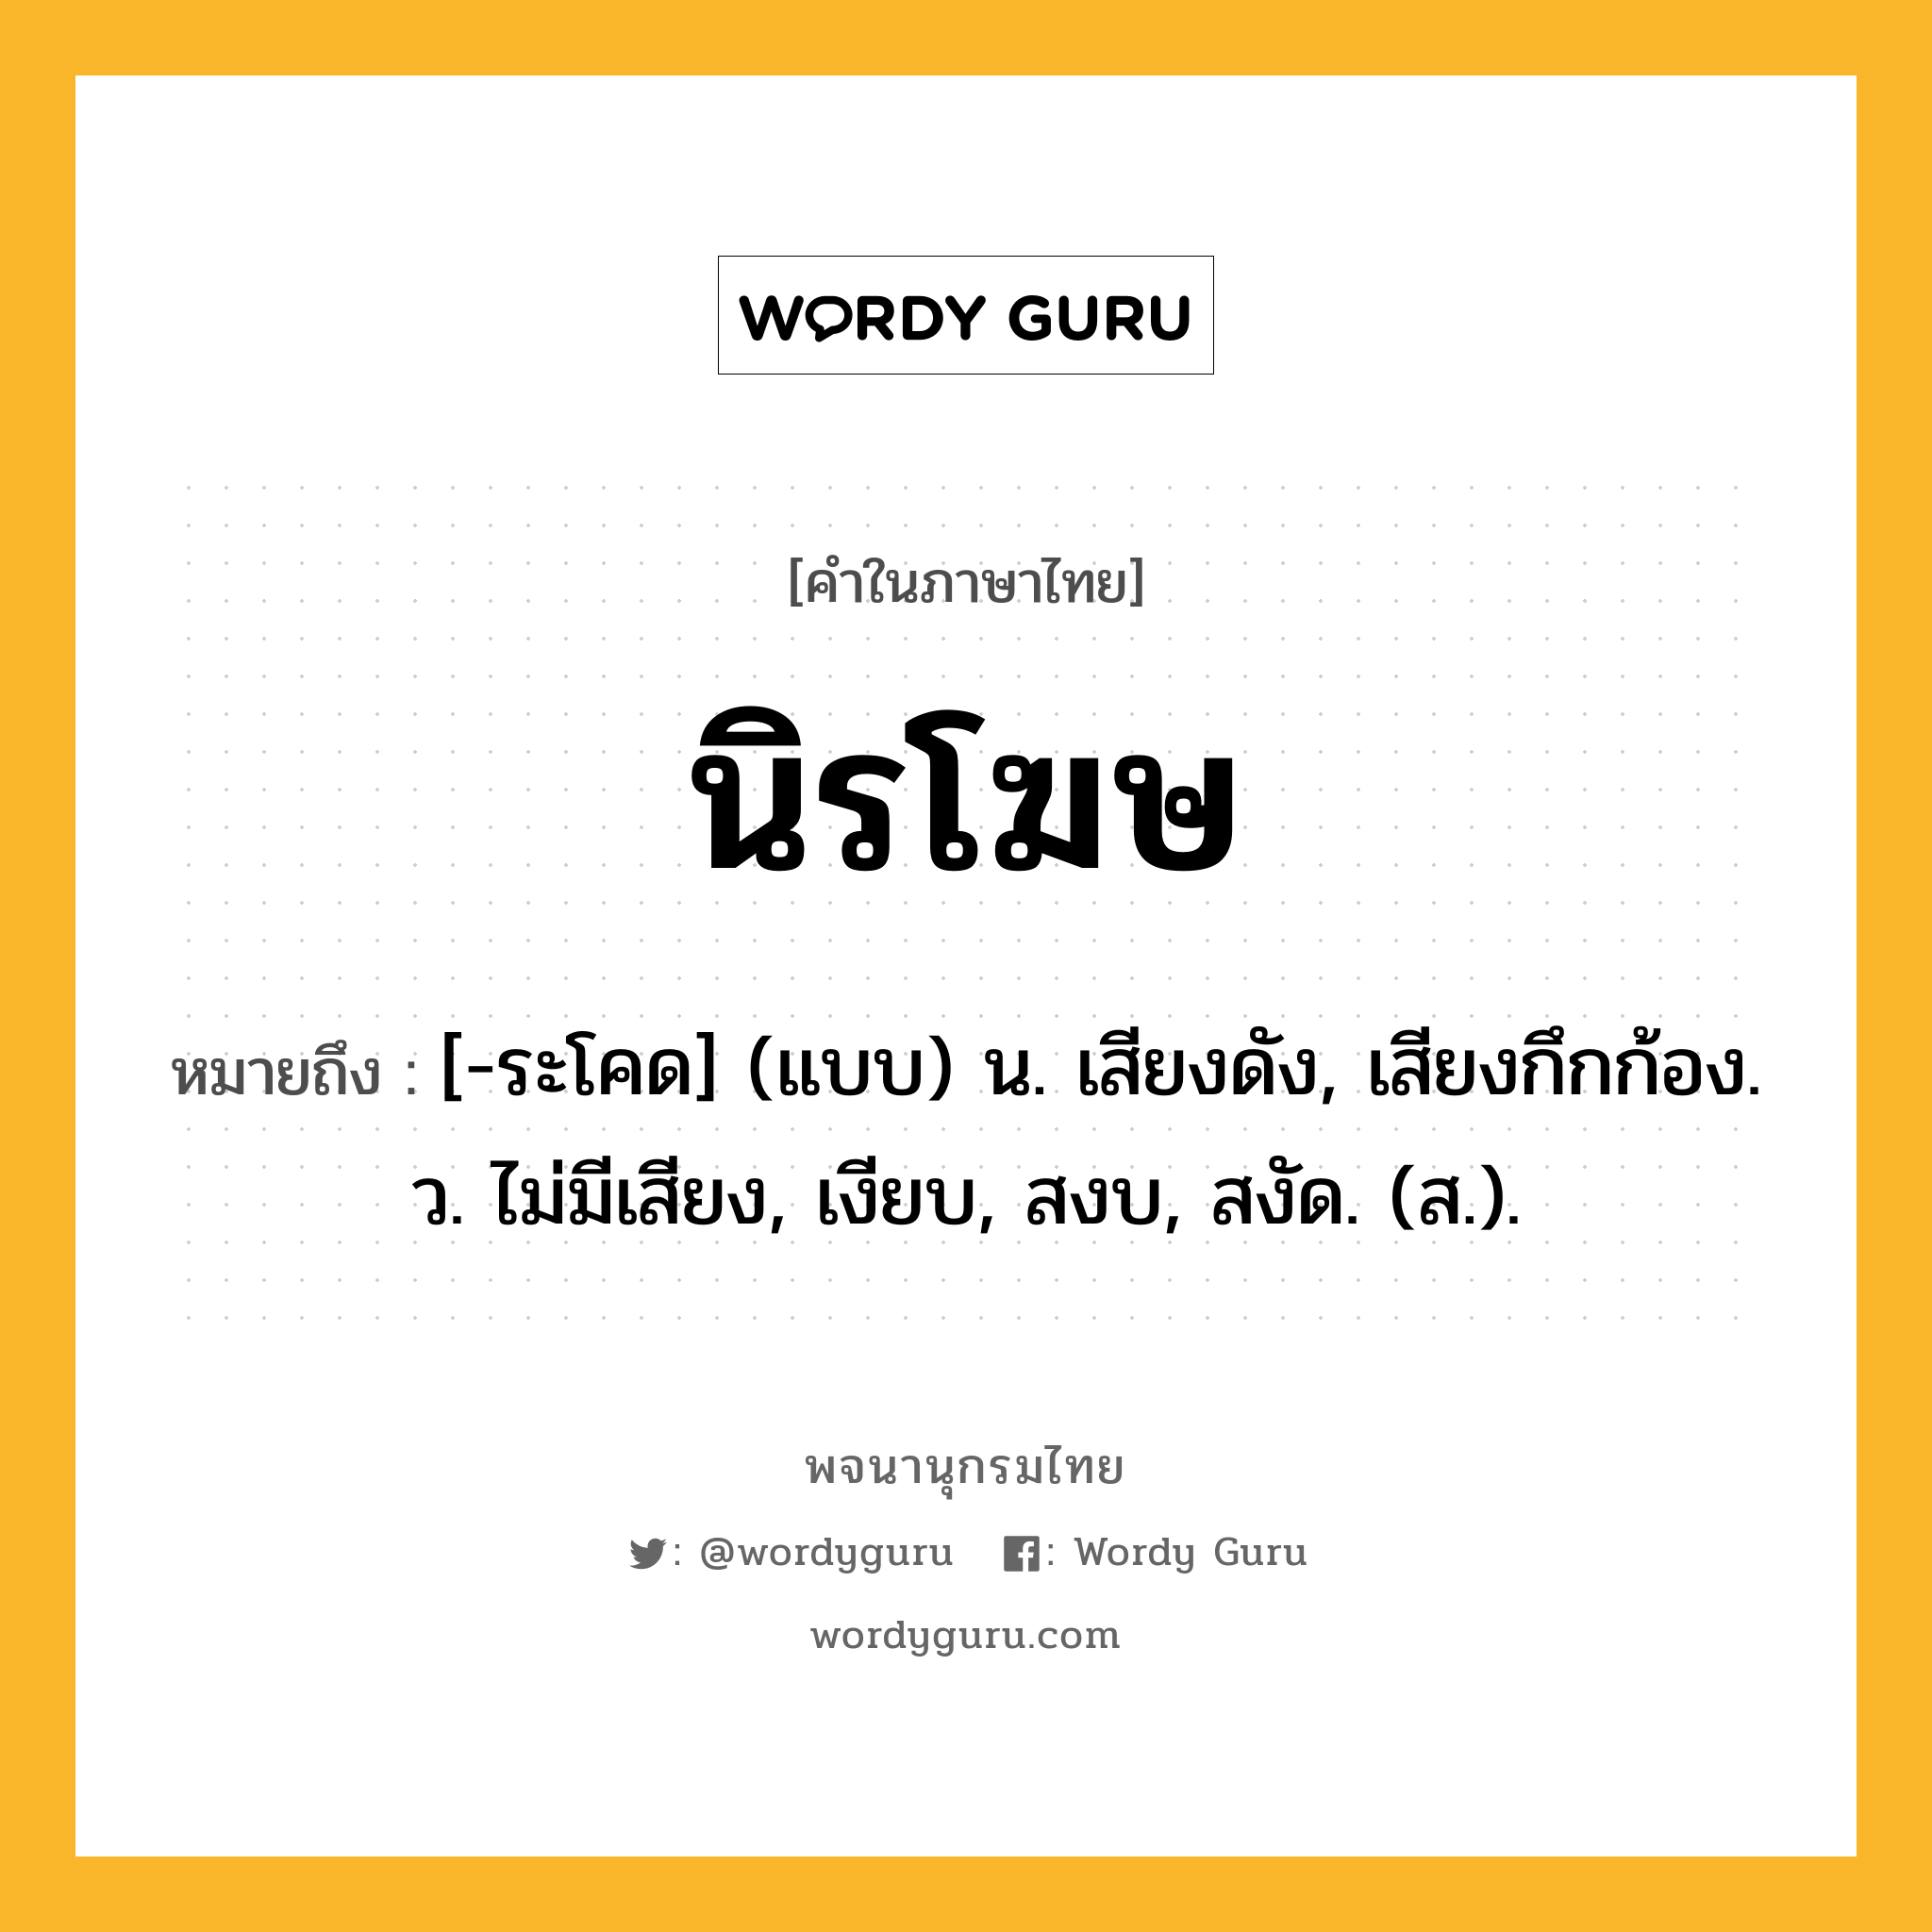 นิรโฆษ ความหมาย หมายถึงอะไร?, คำในภาษาไทย นิรโฆษ หมายถึง [-ระโคด] (แบบ) น. เสียงดัง, เสียงกึกก้อง. ว. ไม่มีเสียง, เงียบ, สงบ, สงัด. (ส.).